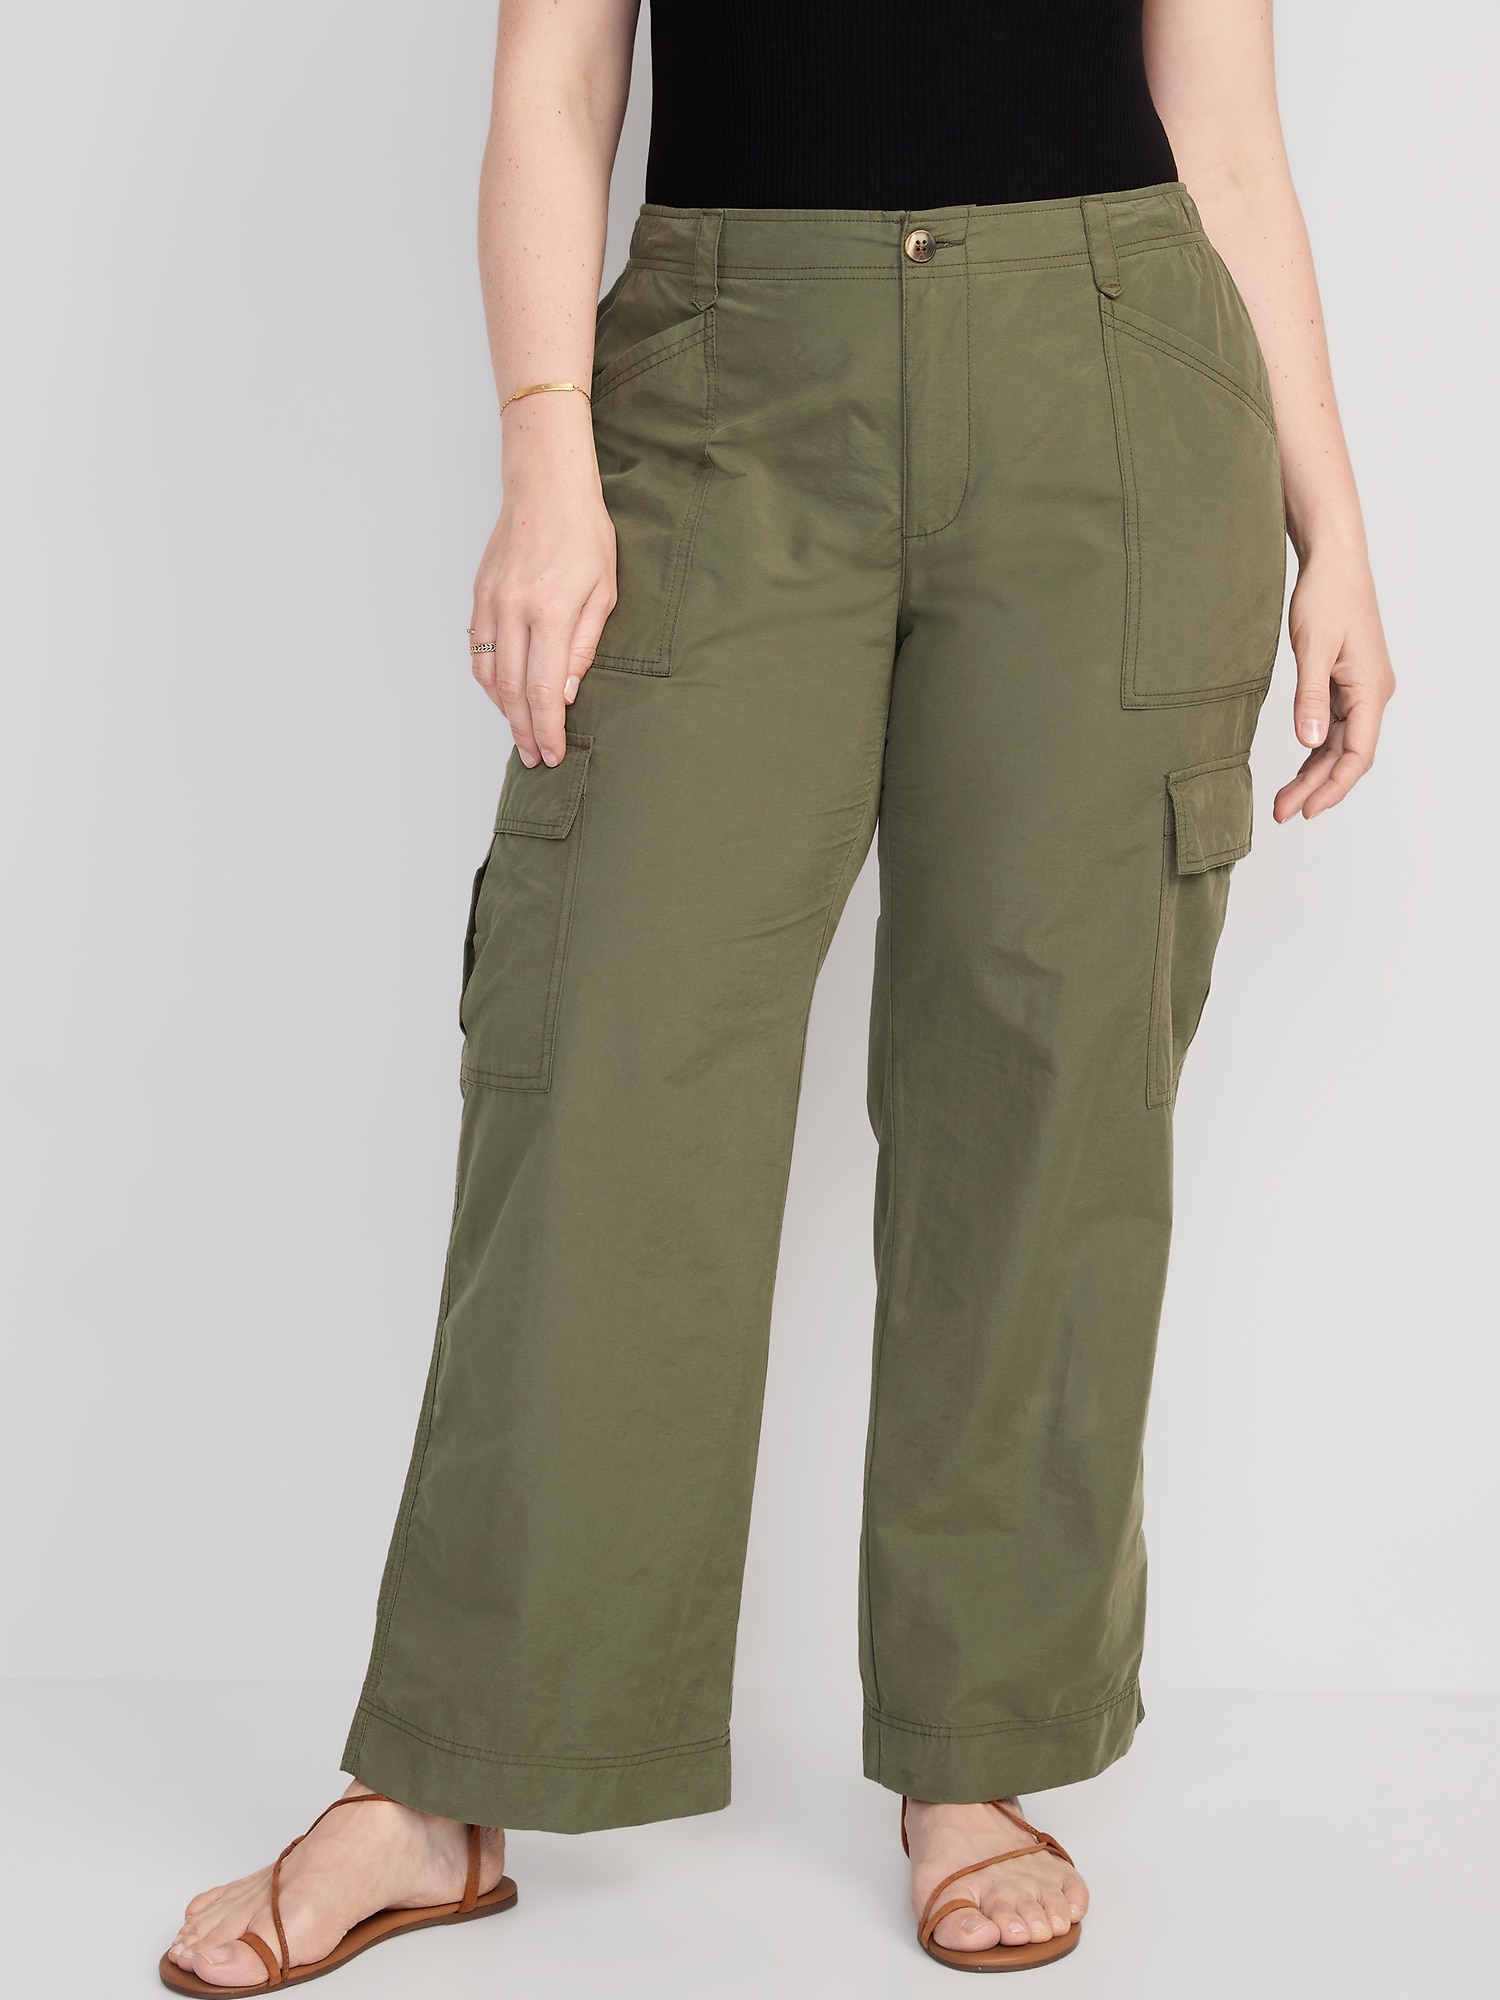 Semi High waist Wide Leg Cargo Pants 6 pocket With Belt For Women